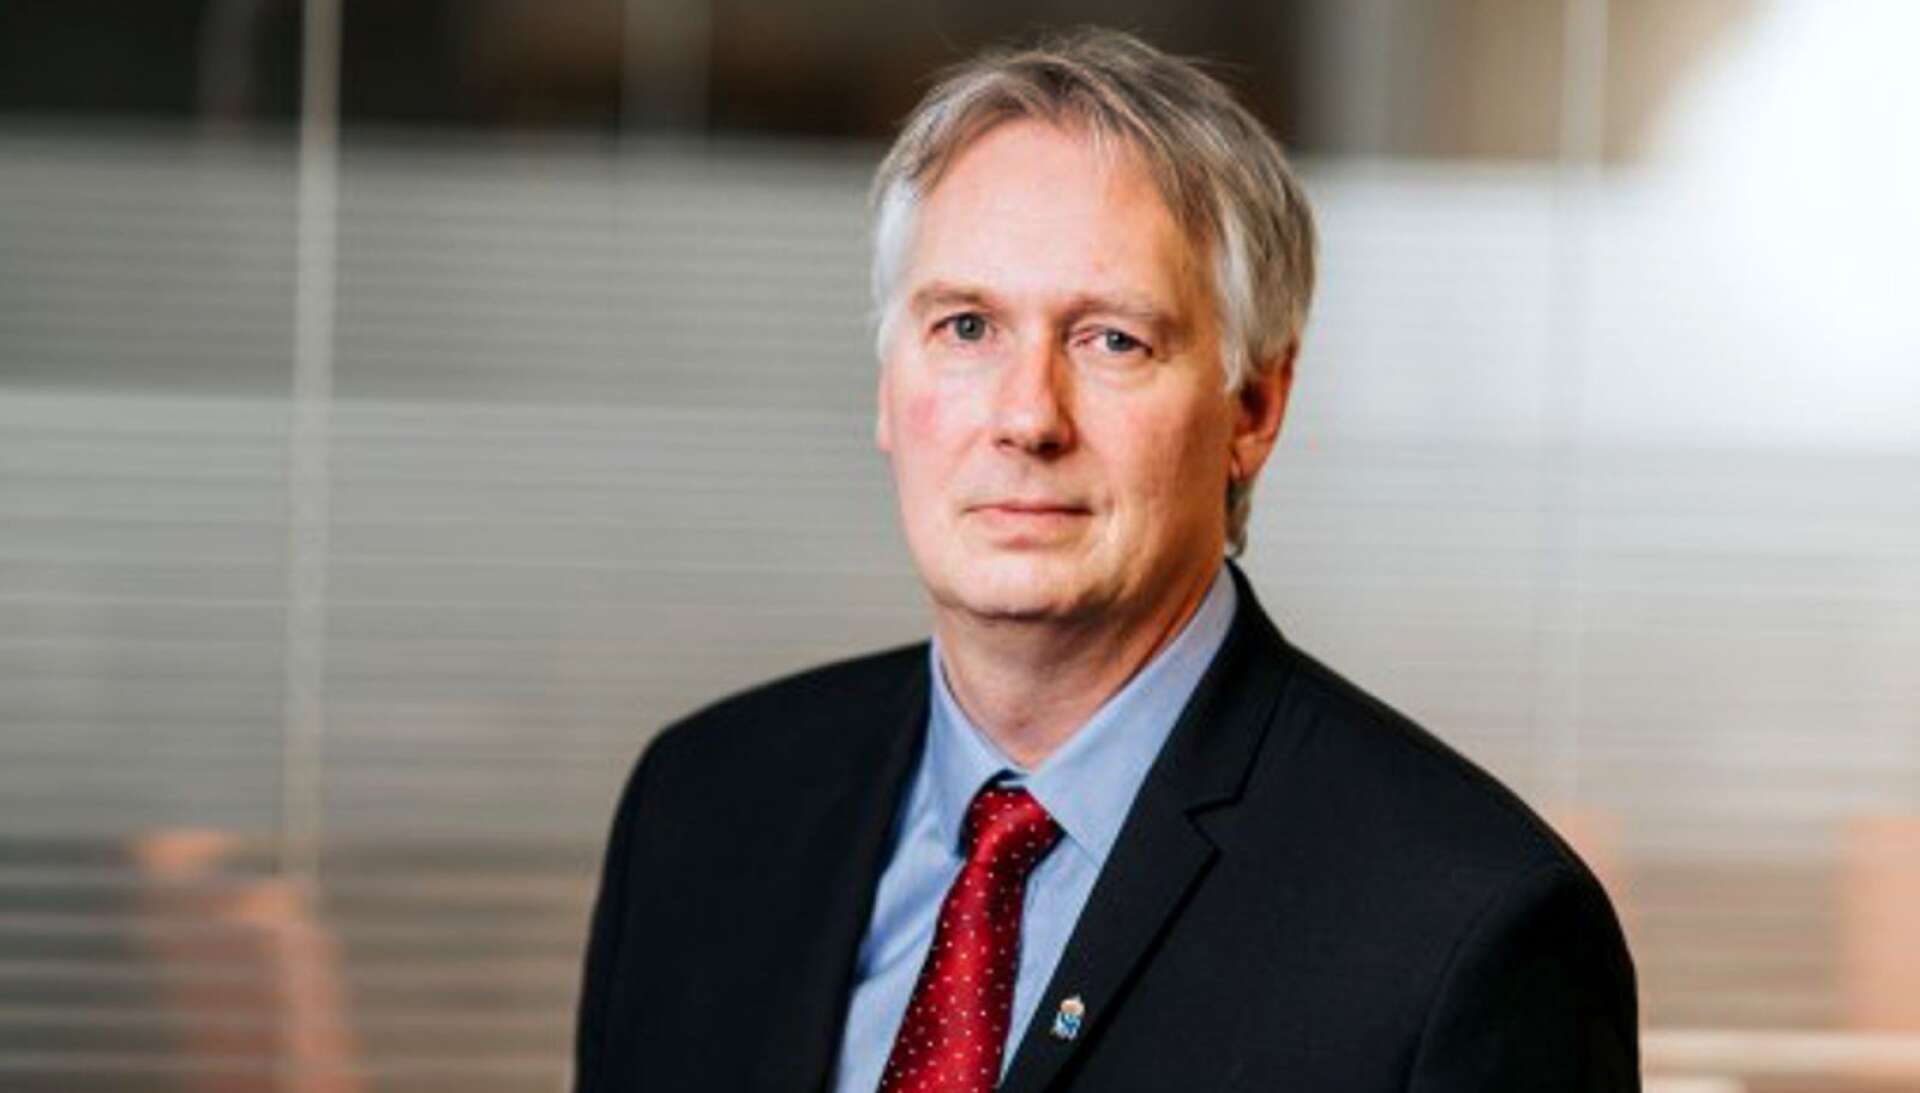 Länsrådet Johan Blom kan få förlängt mandat som tillförordnad landshövding i Värmland.